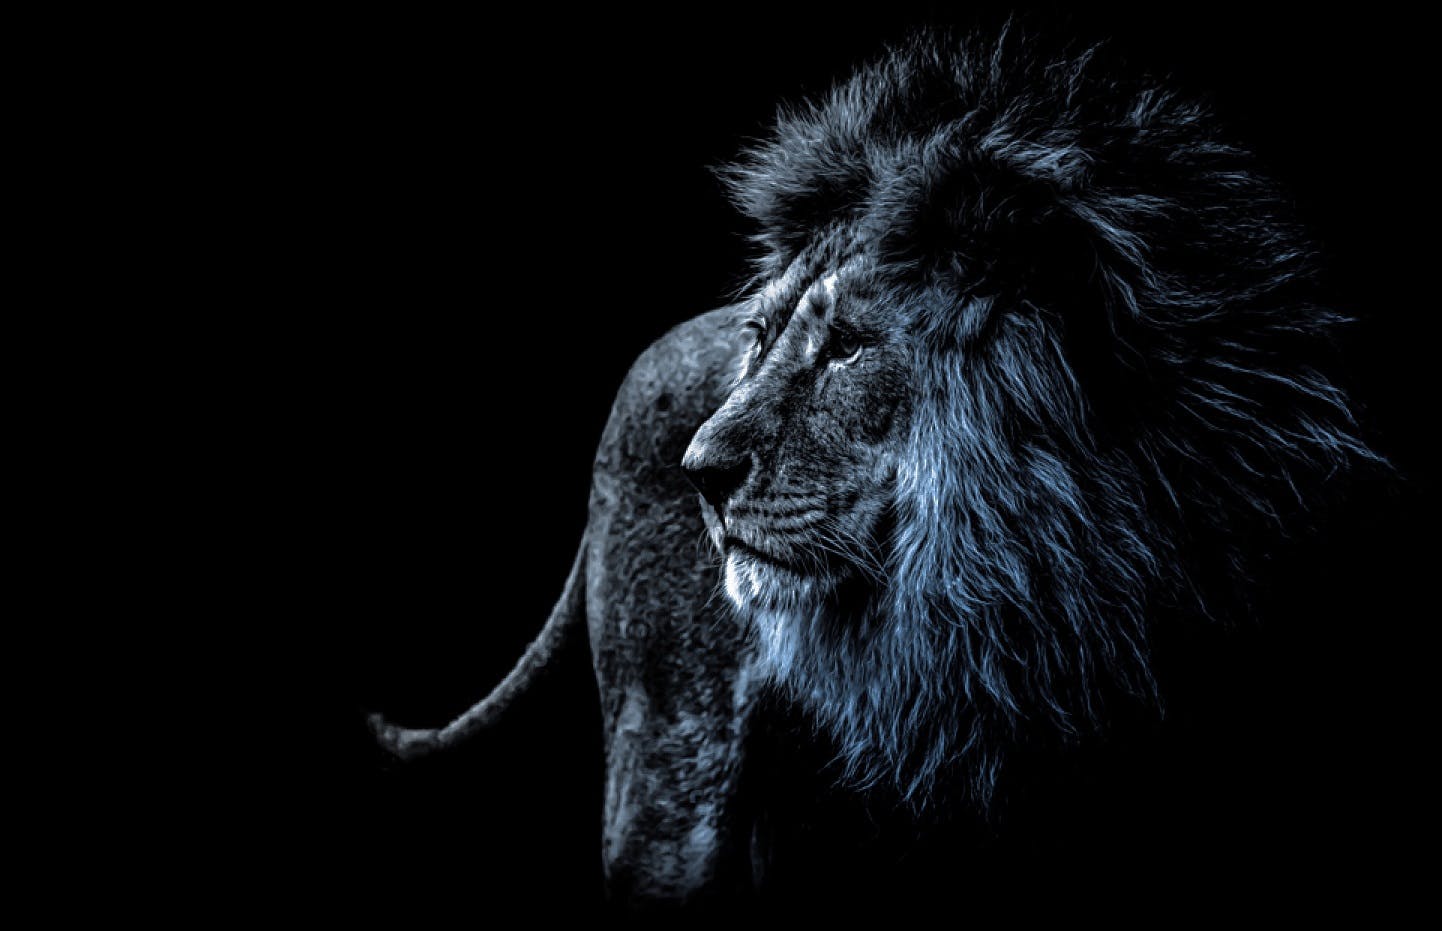 Immagine di un leone in bianco e nero con la criniera che tende sull'azzurro